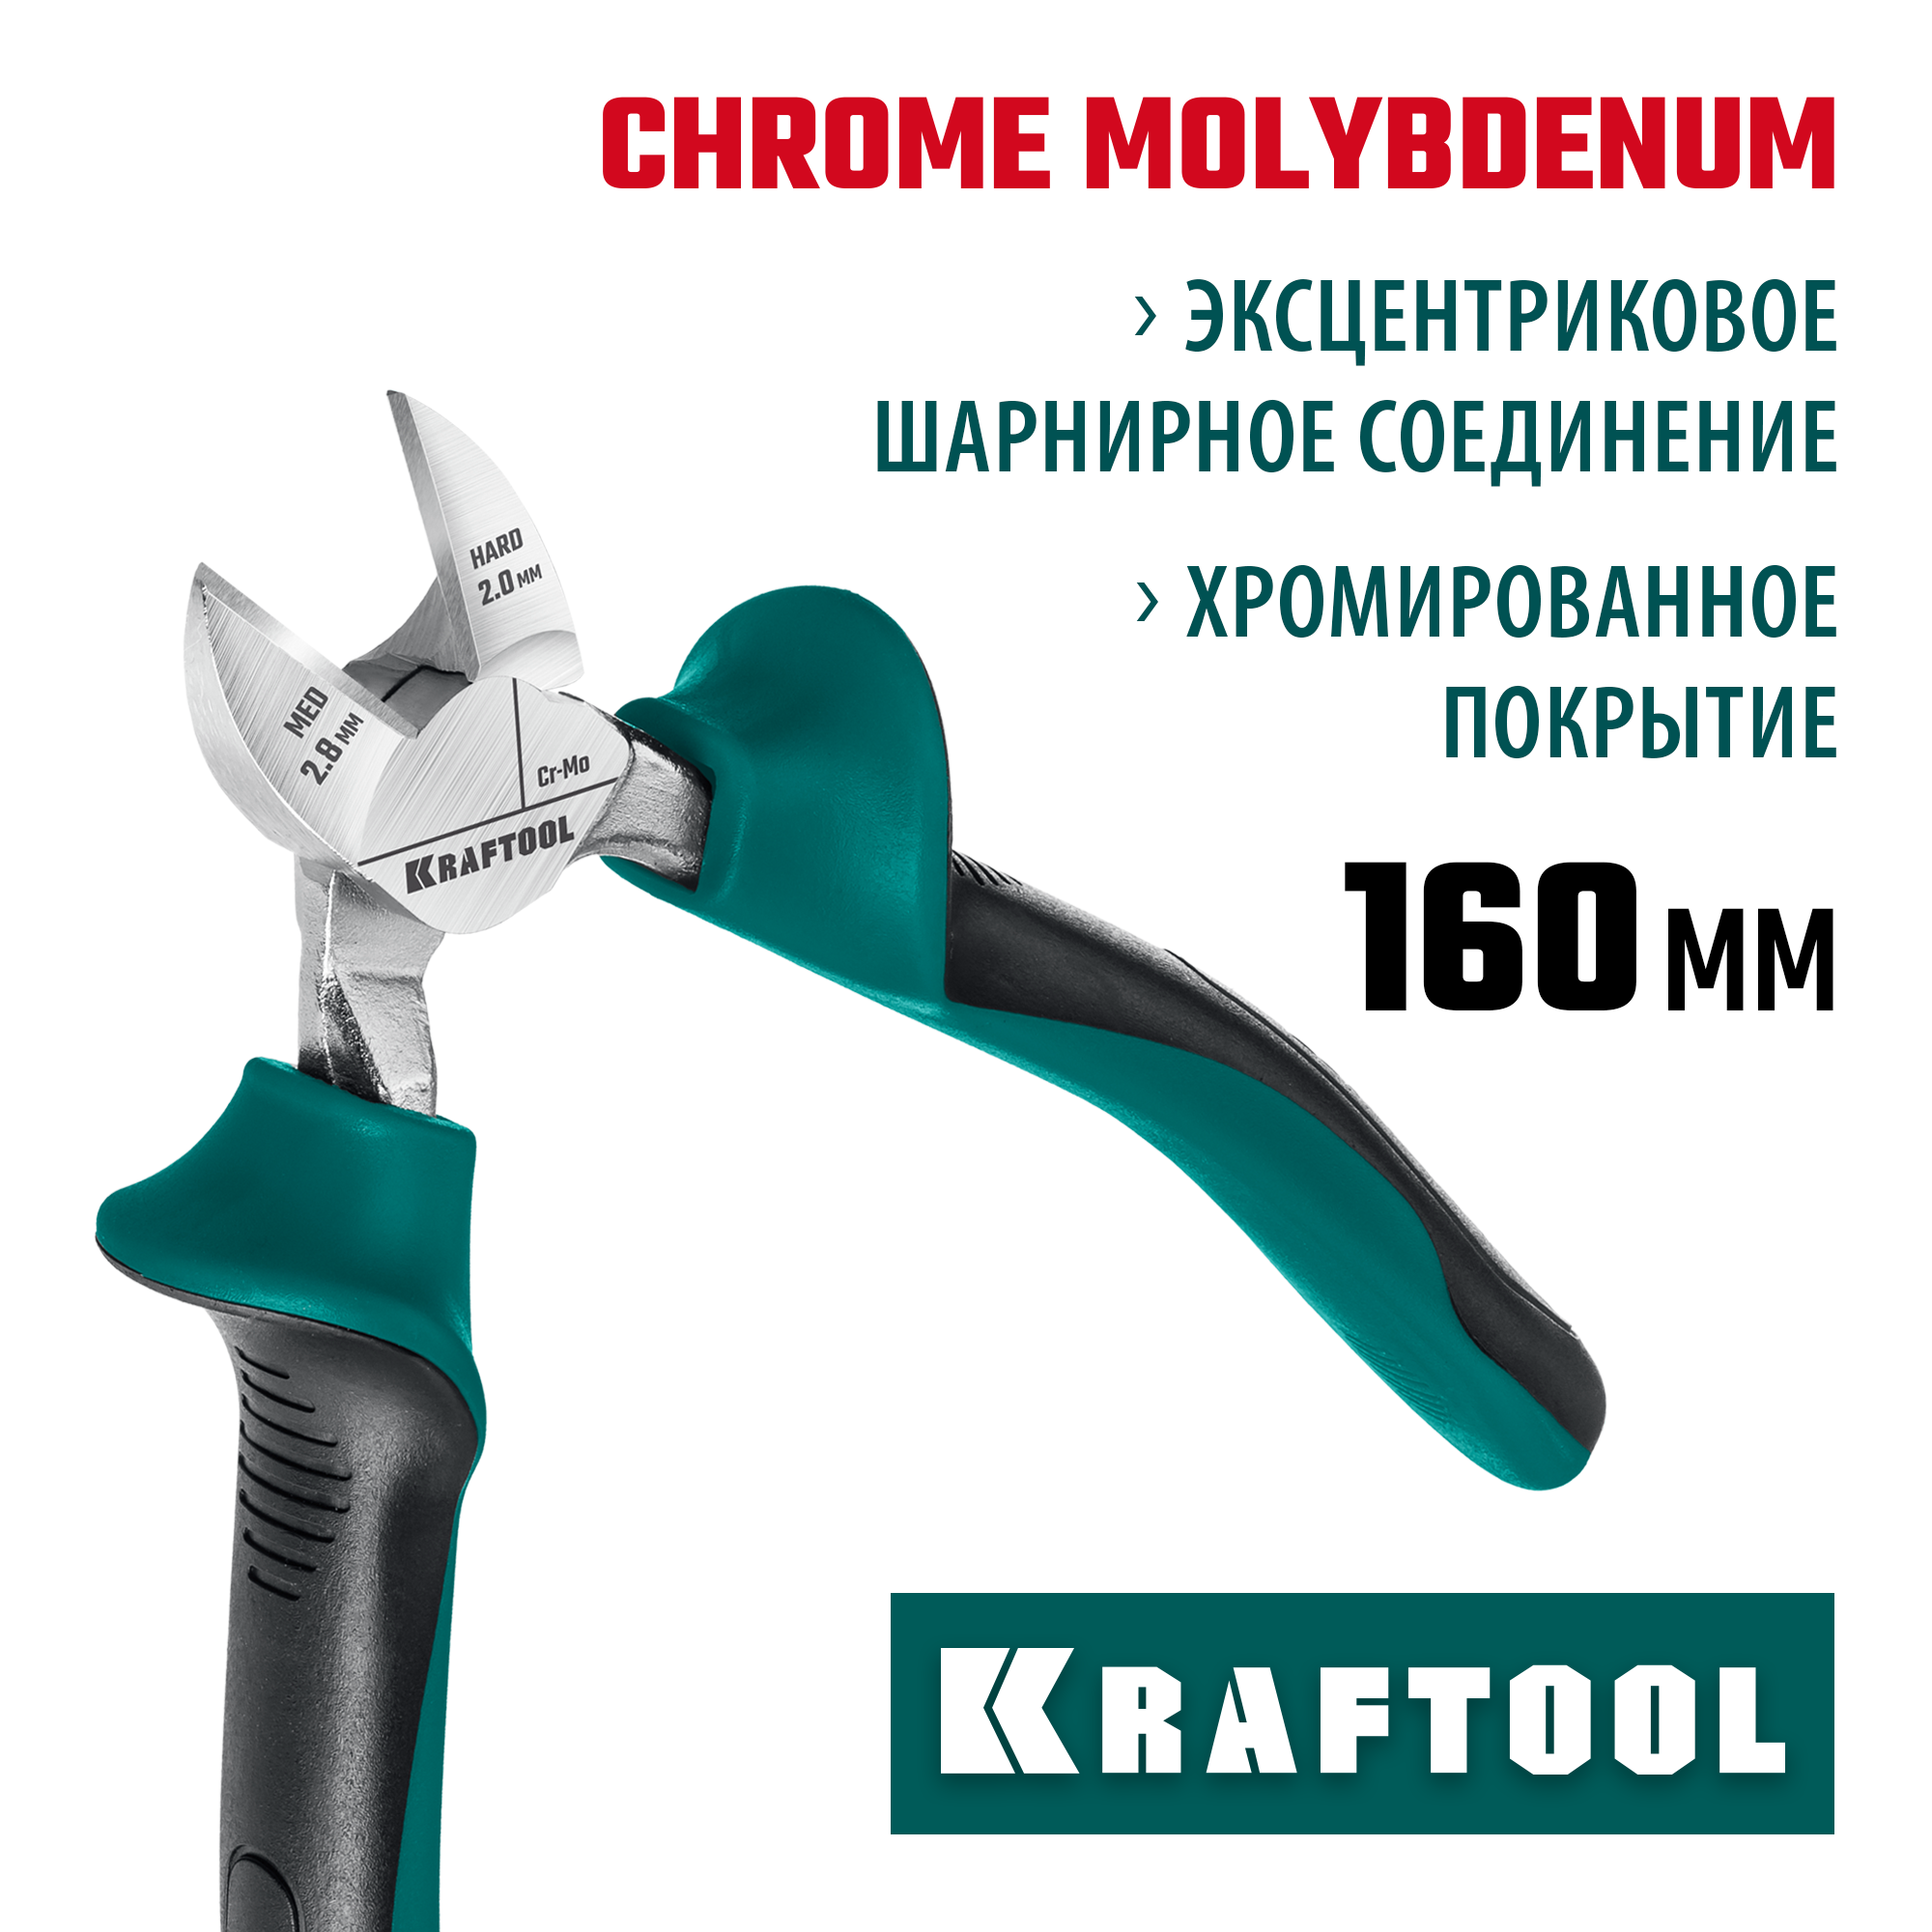 Бокорезы KRAFTOOL 160 мм 22011-5-16_z01 -  , цены на .